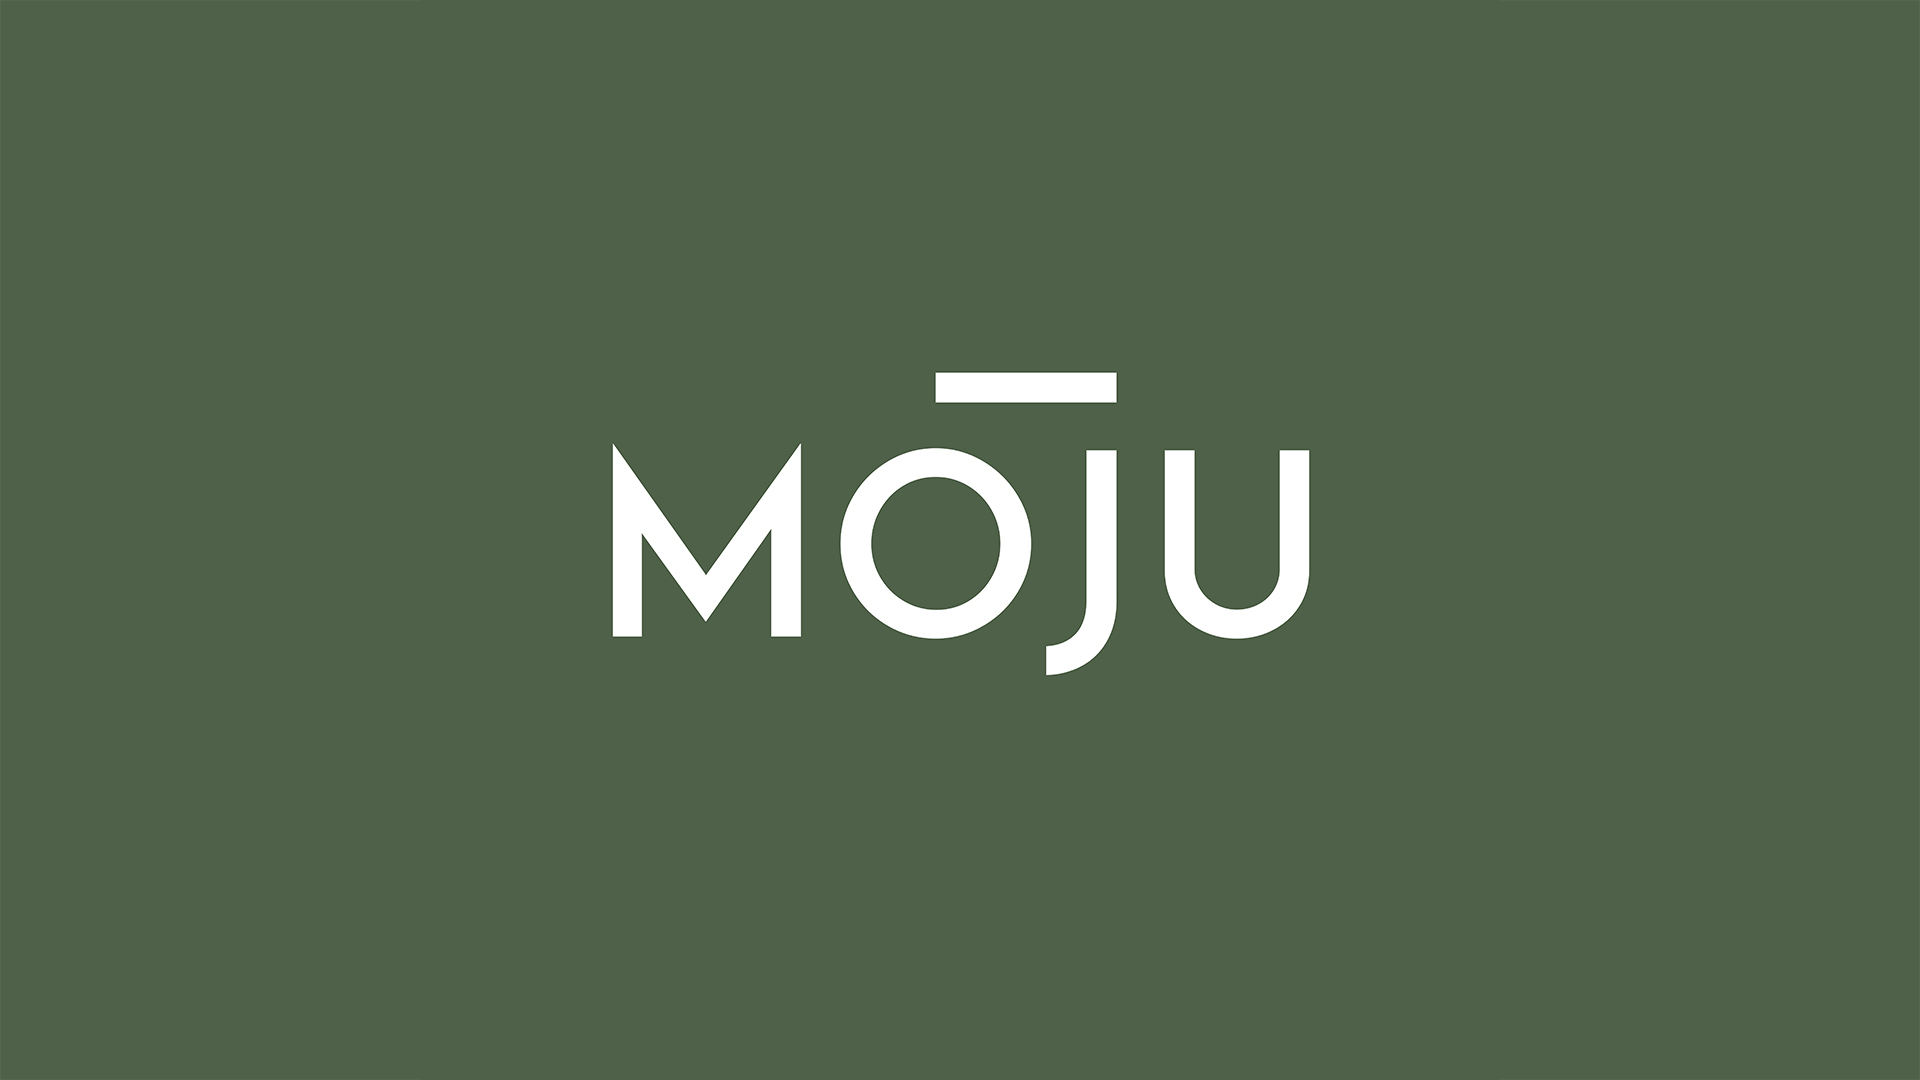 MOJU Design Studio